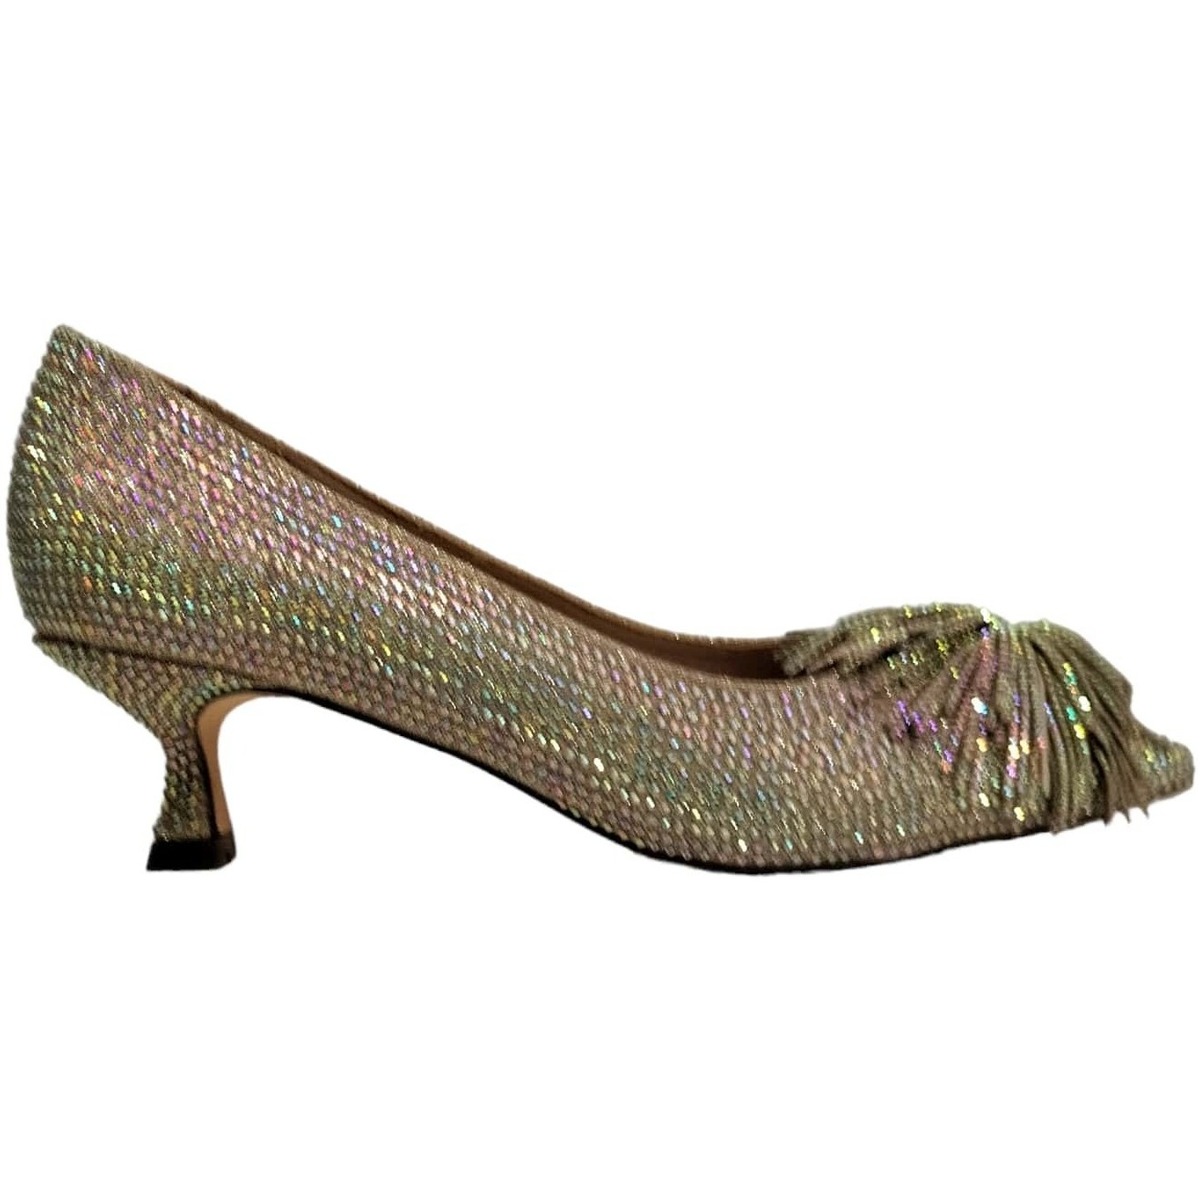 Chaussures Femme Escarpins Menbur 24686-oro Noir